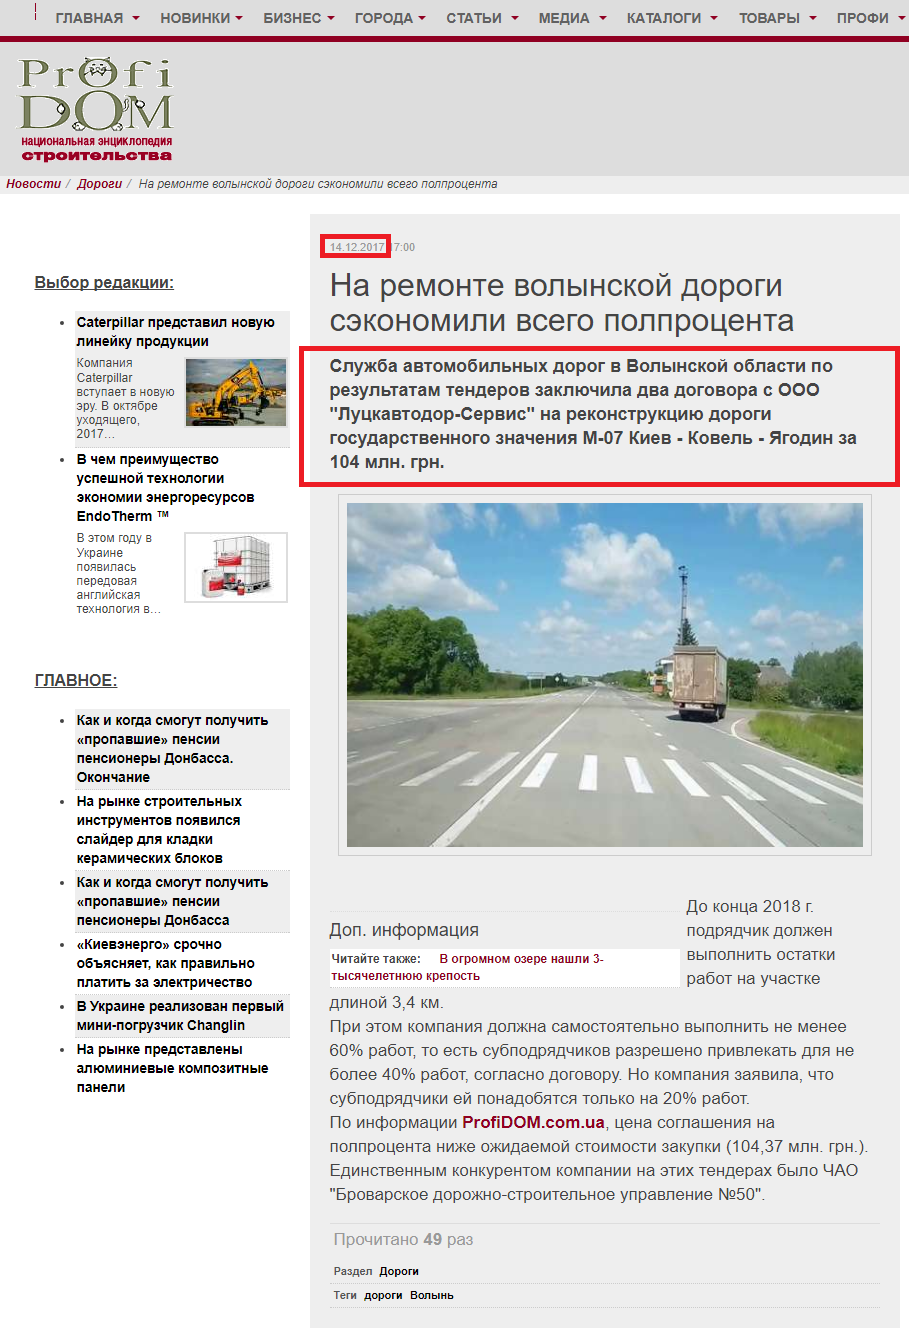 http://profidom.com.ua/novosti/dorogi/24964-na-remonte-volynskoj-dorogi-sekonomili-vsego-polprotsenta